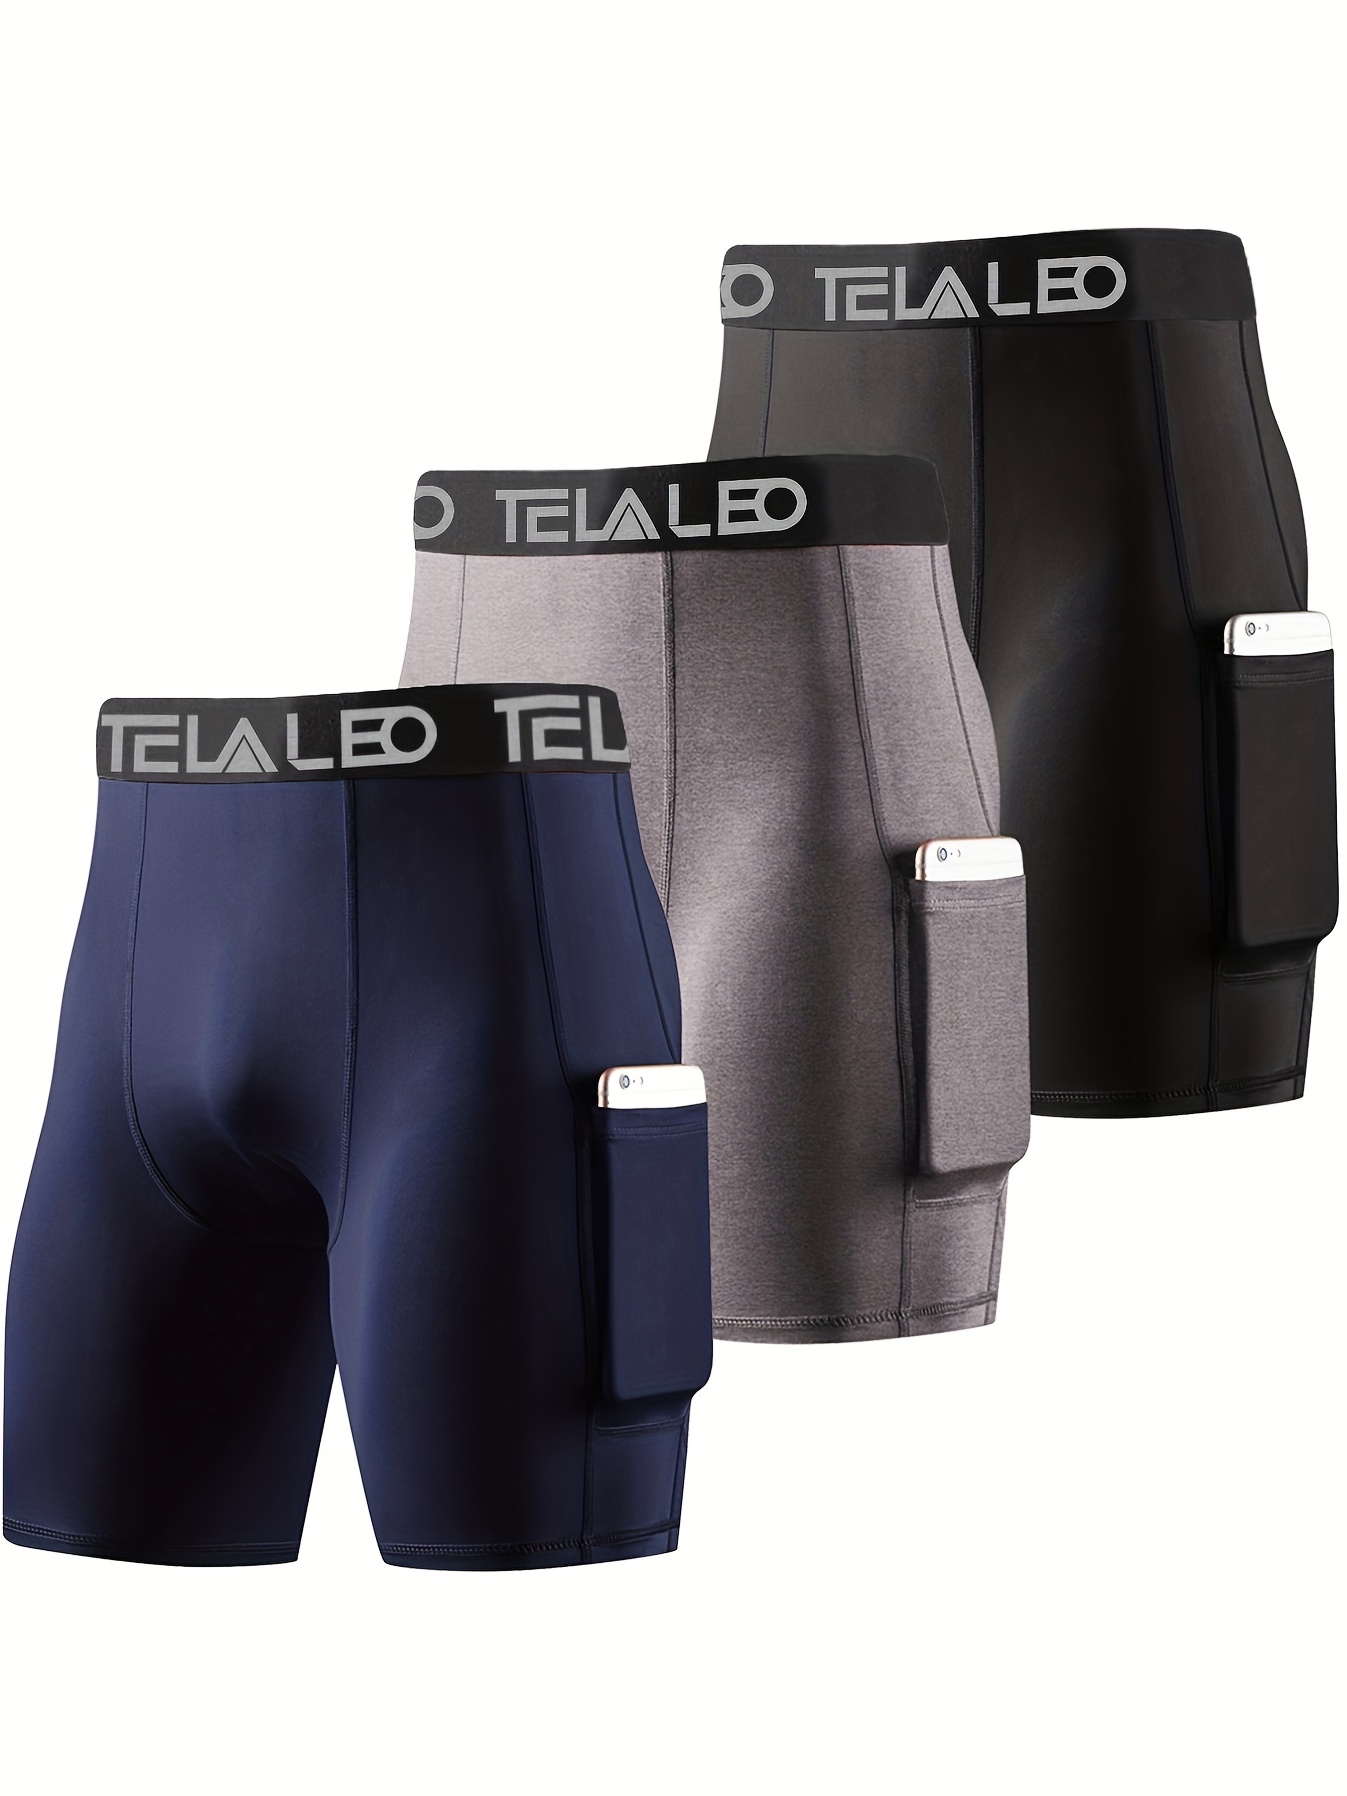 Men's Sports Underwear Men's Running Fitness Boxers Briefs - Temu